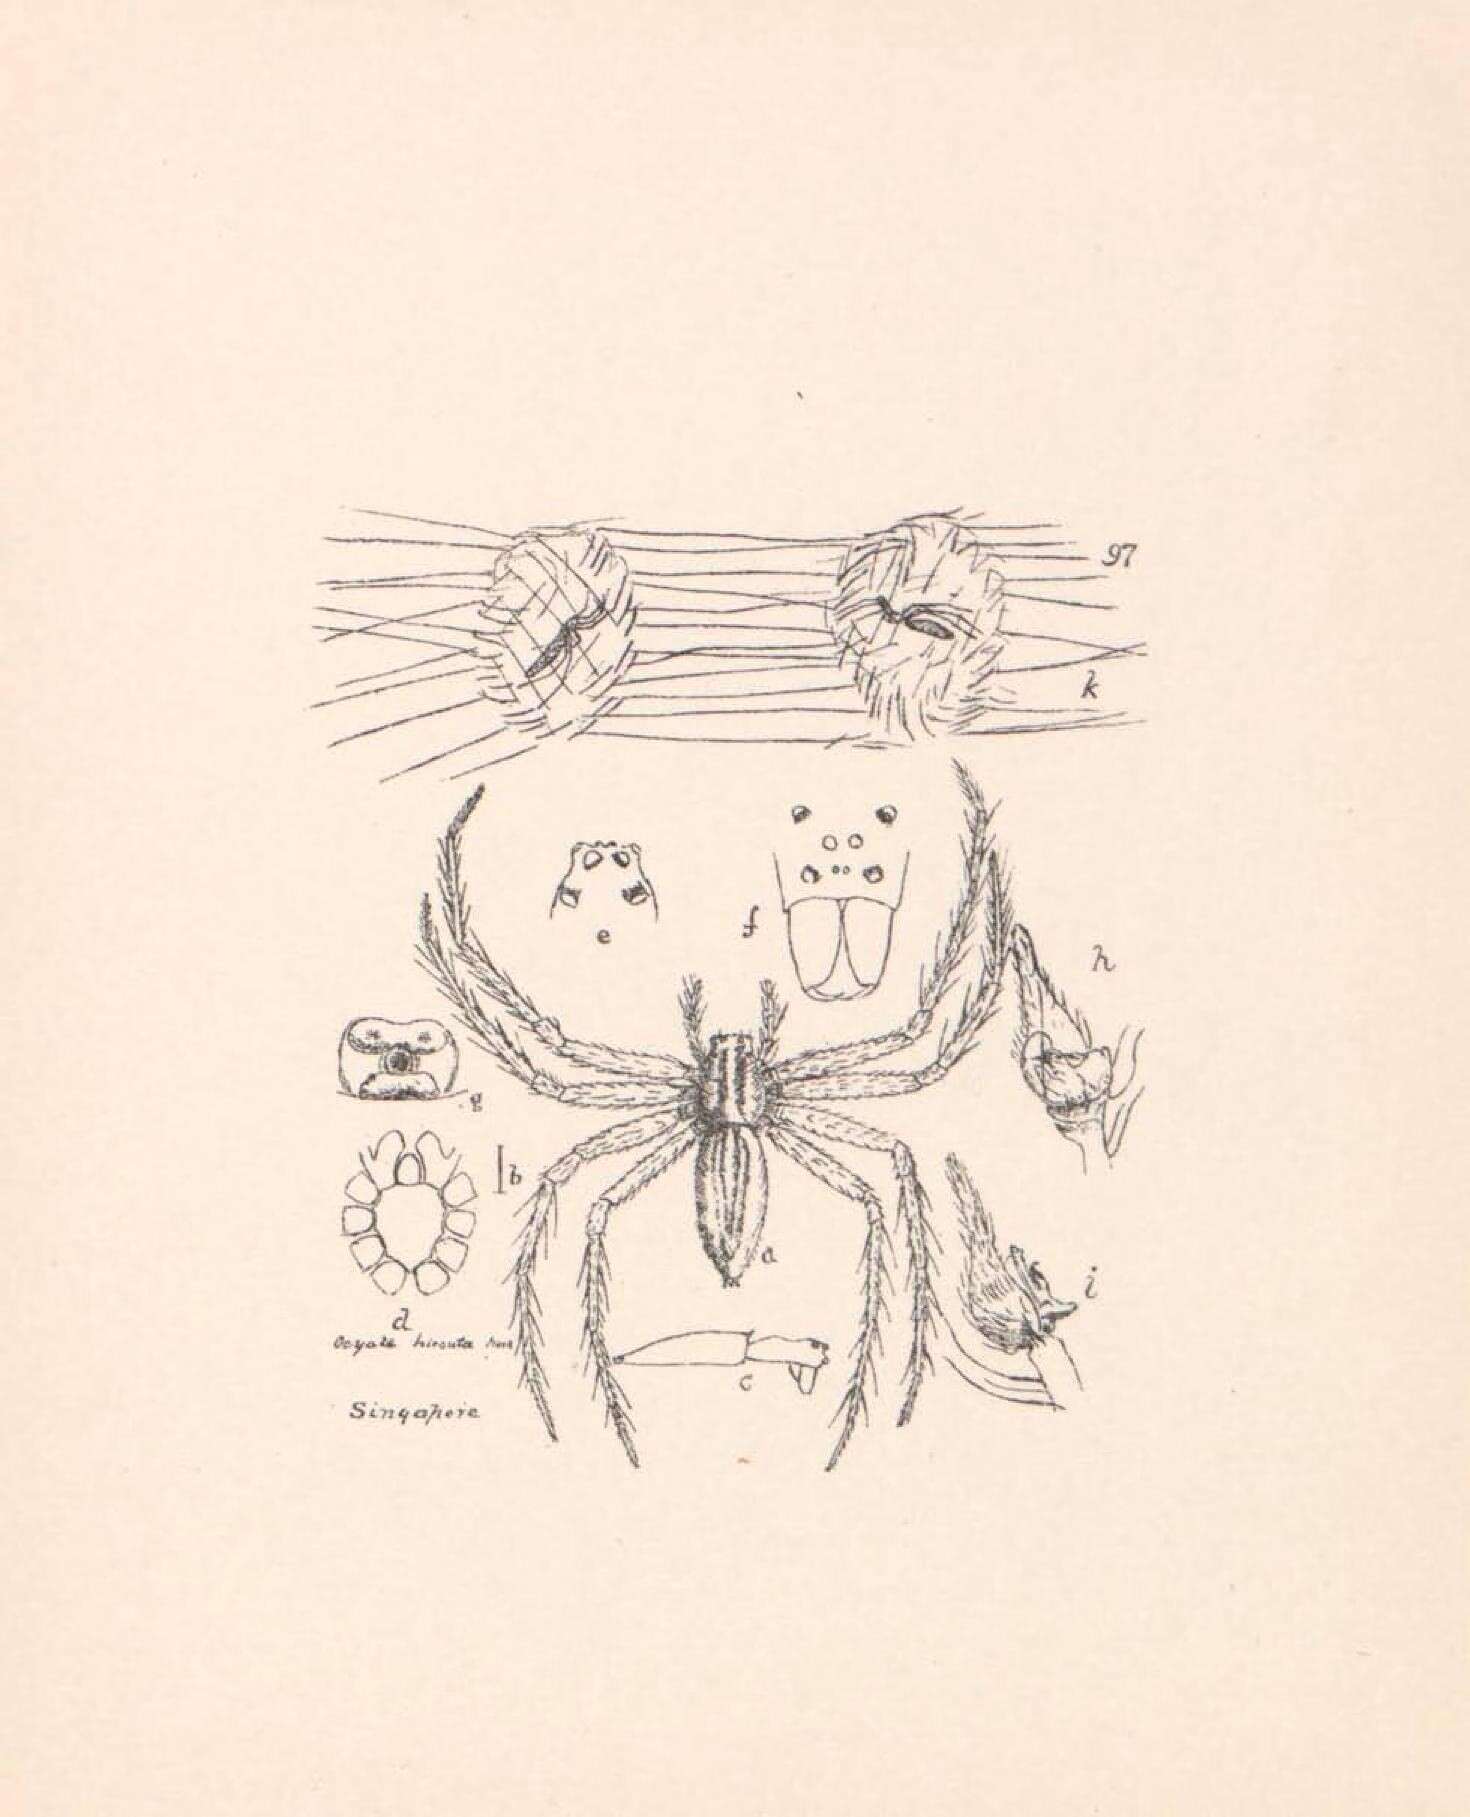 Plancia ëd Polyboea vulpina Thorell 1895